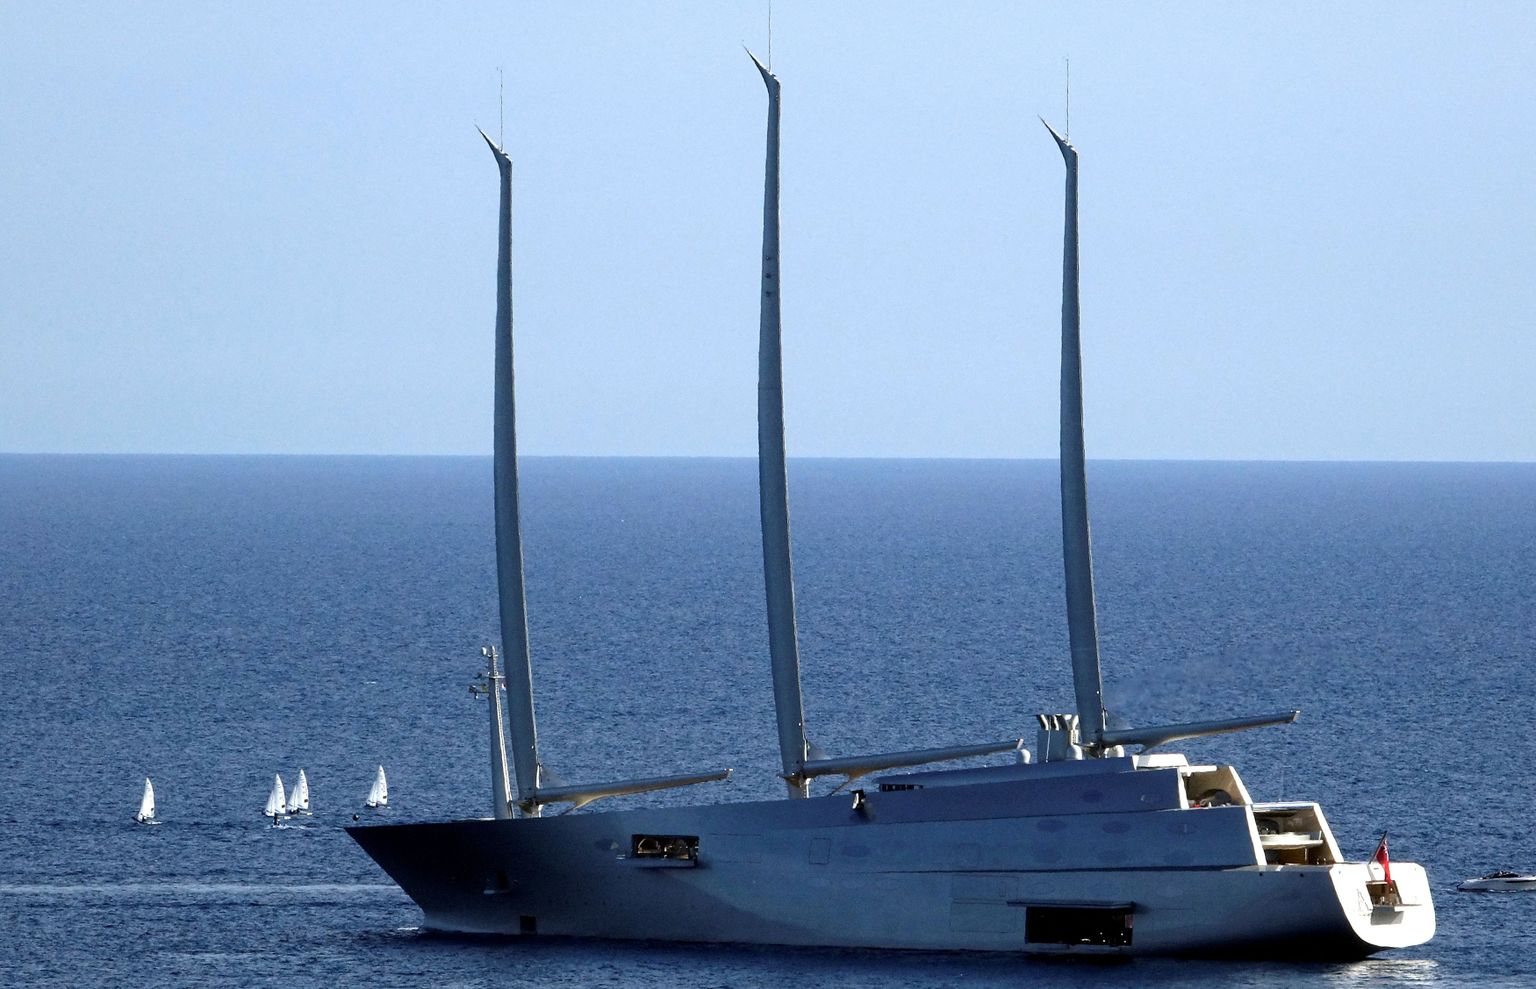 Philippe Starcki disainitud 142,81 pikkuse purjedega mootorjahi Sailing Yacht A väärtuseks arvatakse 578 miljonit dollarit ja selle omanikuks peetakse Vene väetisemagnaati Andrei Melnitšenkot. Nüüdseks on jaht Itaalia ametivõimude poolt konfiskeeritud. Pildil on see Monaco reidil mais 2017.